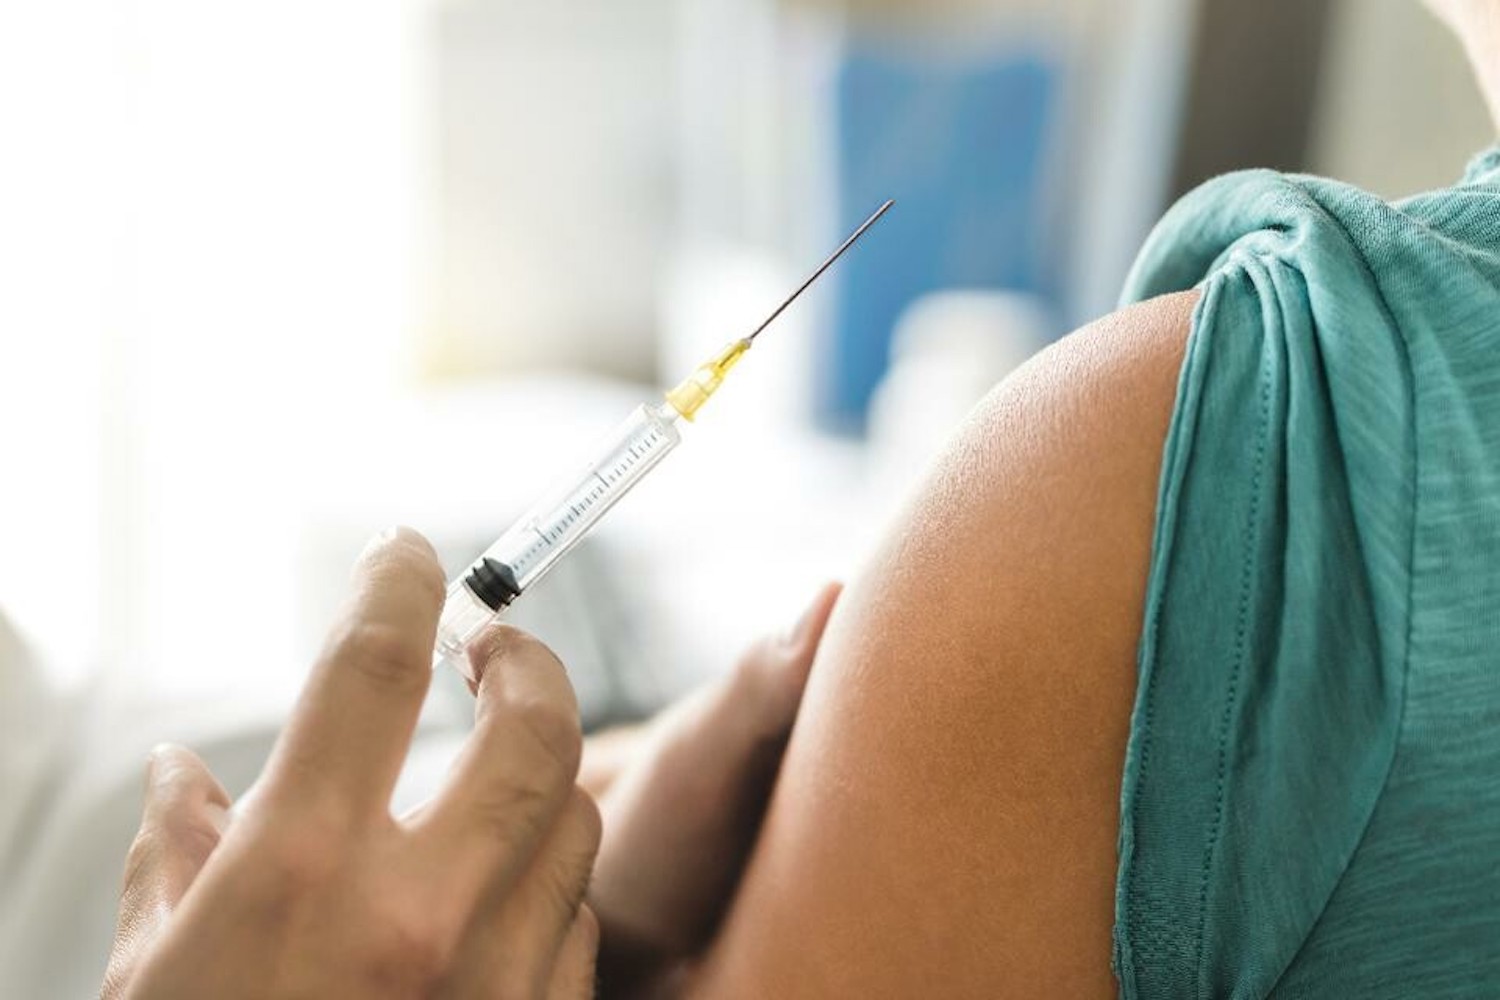 Συνεχίζεται με γοργούς ρυθμούς ο εμβολιασμός των πληρωμάτων υποβρυχίων - e-Nautilia.gr | Το Ελληνικό Portal για την Ναυτιλία. Τελευταία νέα, άρθρα, Οπτικοακουστικό Υλικό